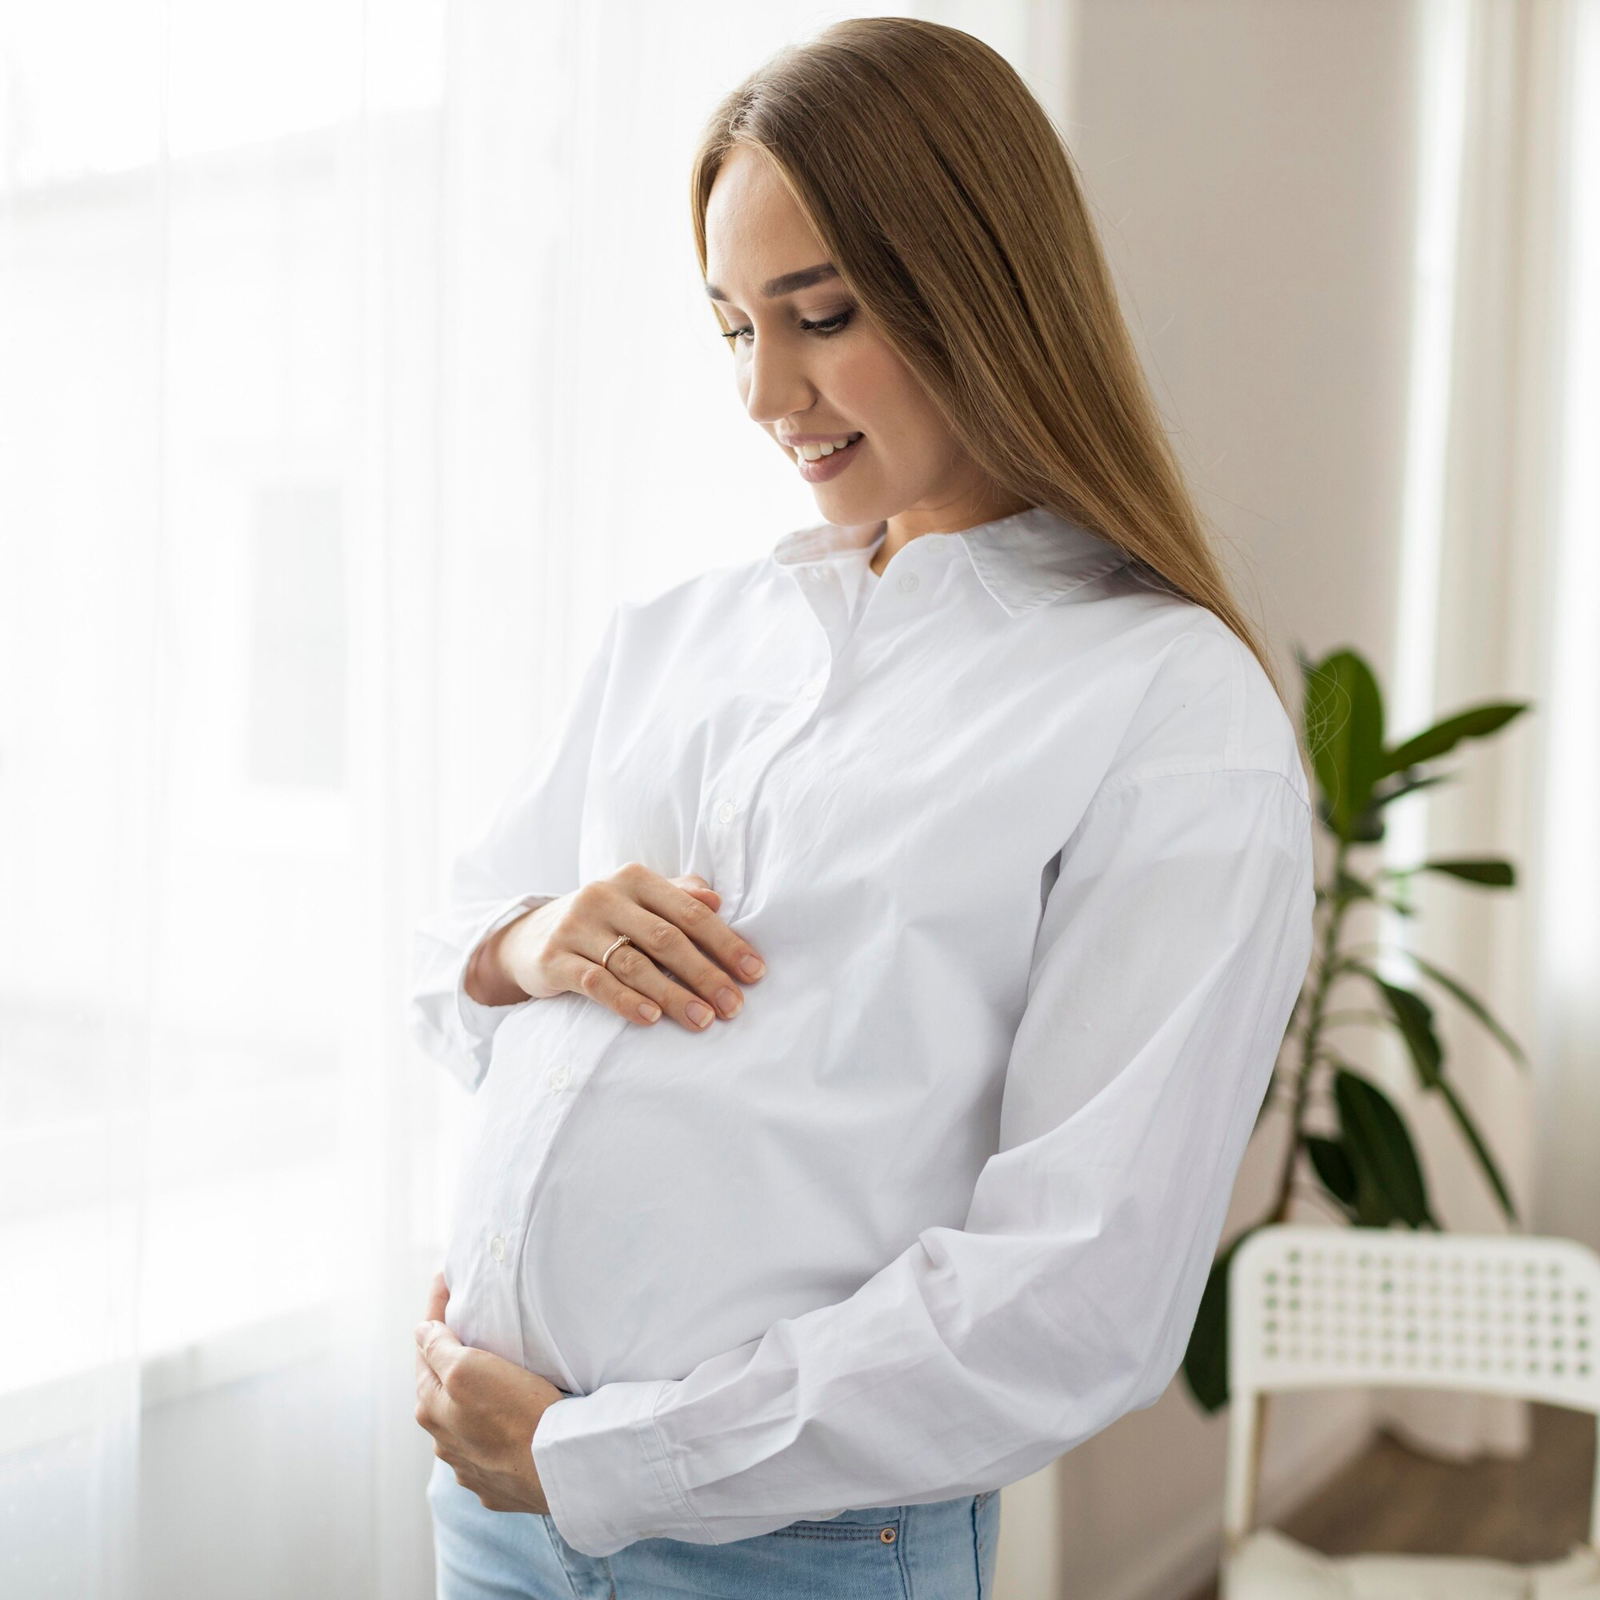 Hamilelikte Çölyak Hastalığı. Hamilelikte Çölyak Hakkında Merak Edilenler